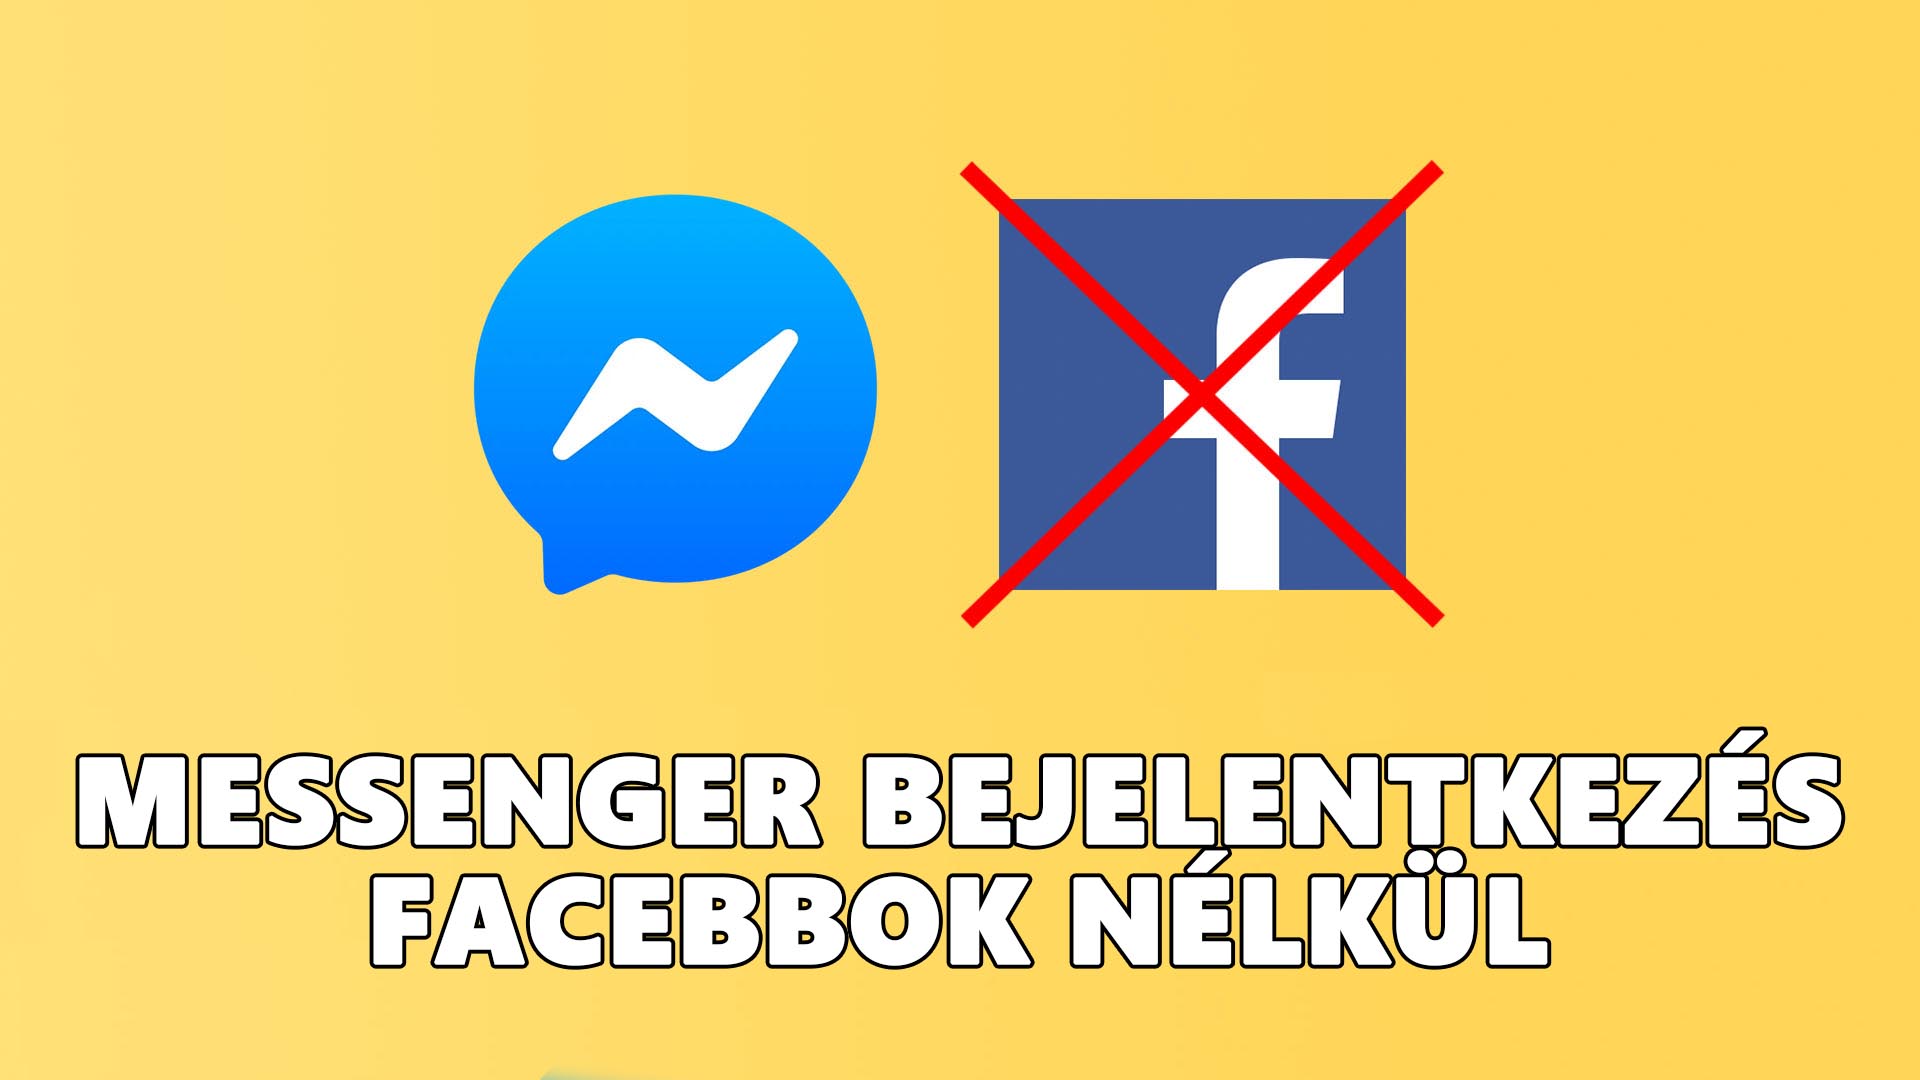 Messenger bejelentkezés Facebook nélkül